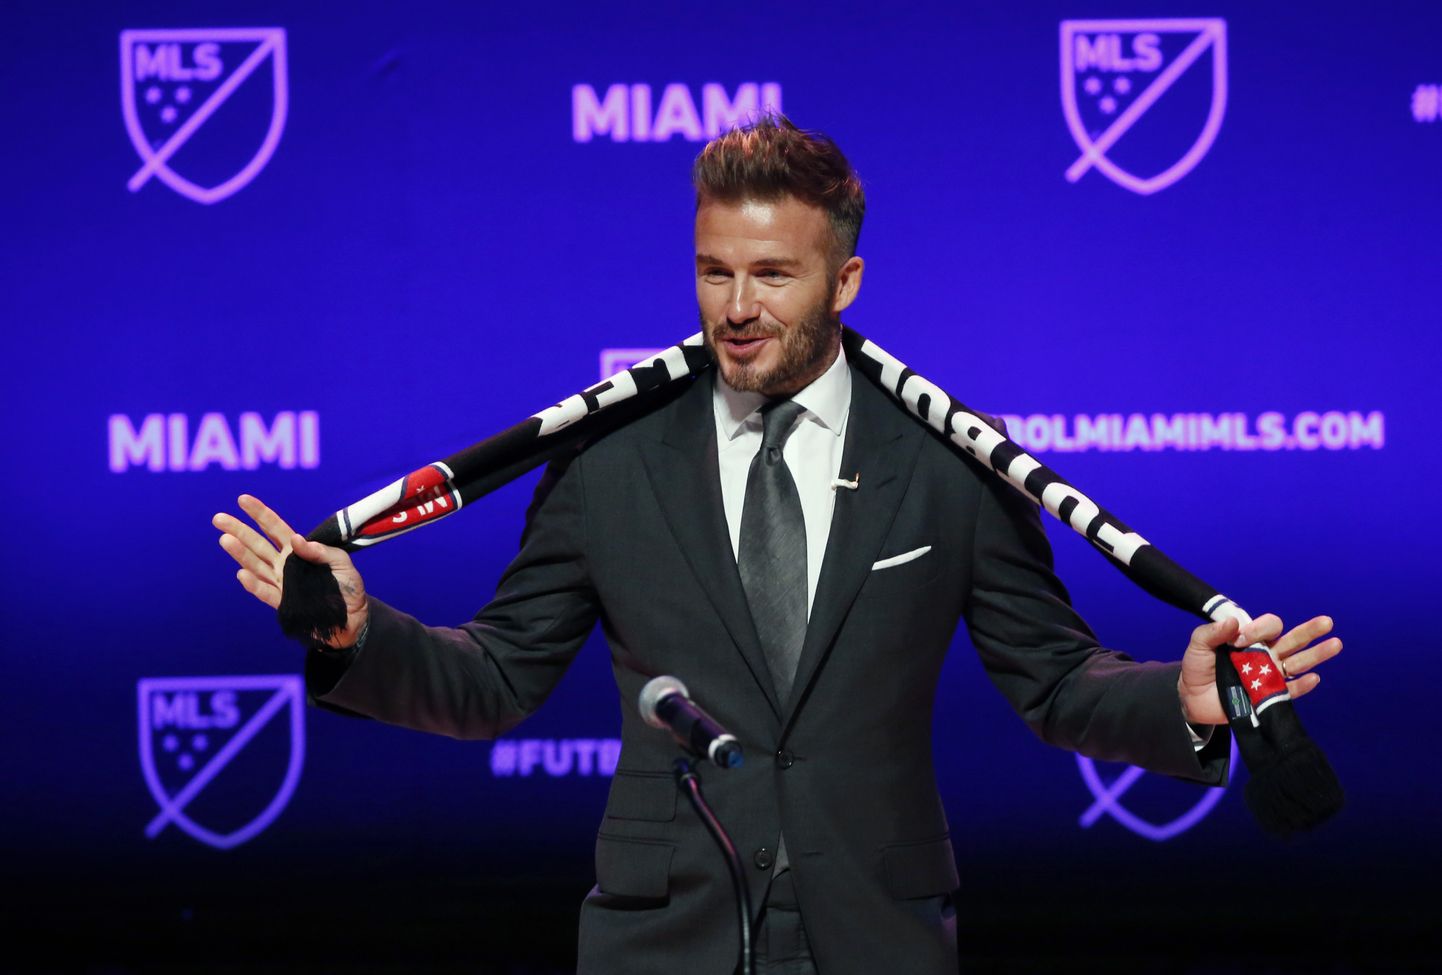 Endine tippmängija, superstaar David Beckham on jalgpalliklubi Miami Interi üks suuromanikke.